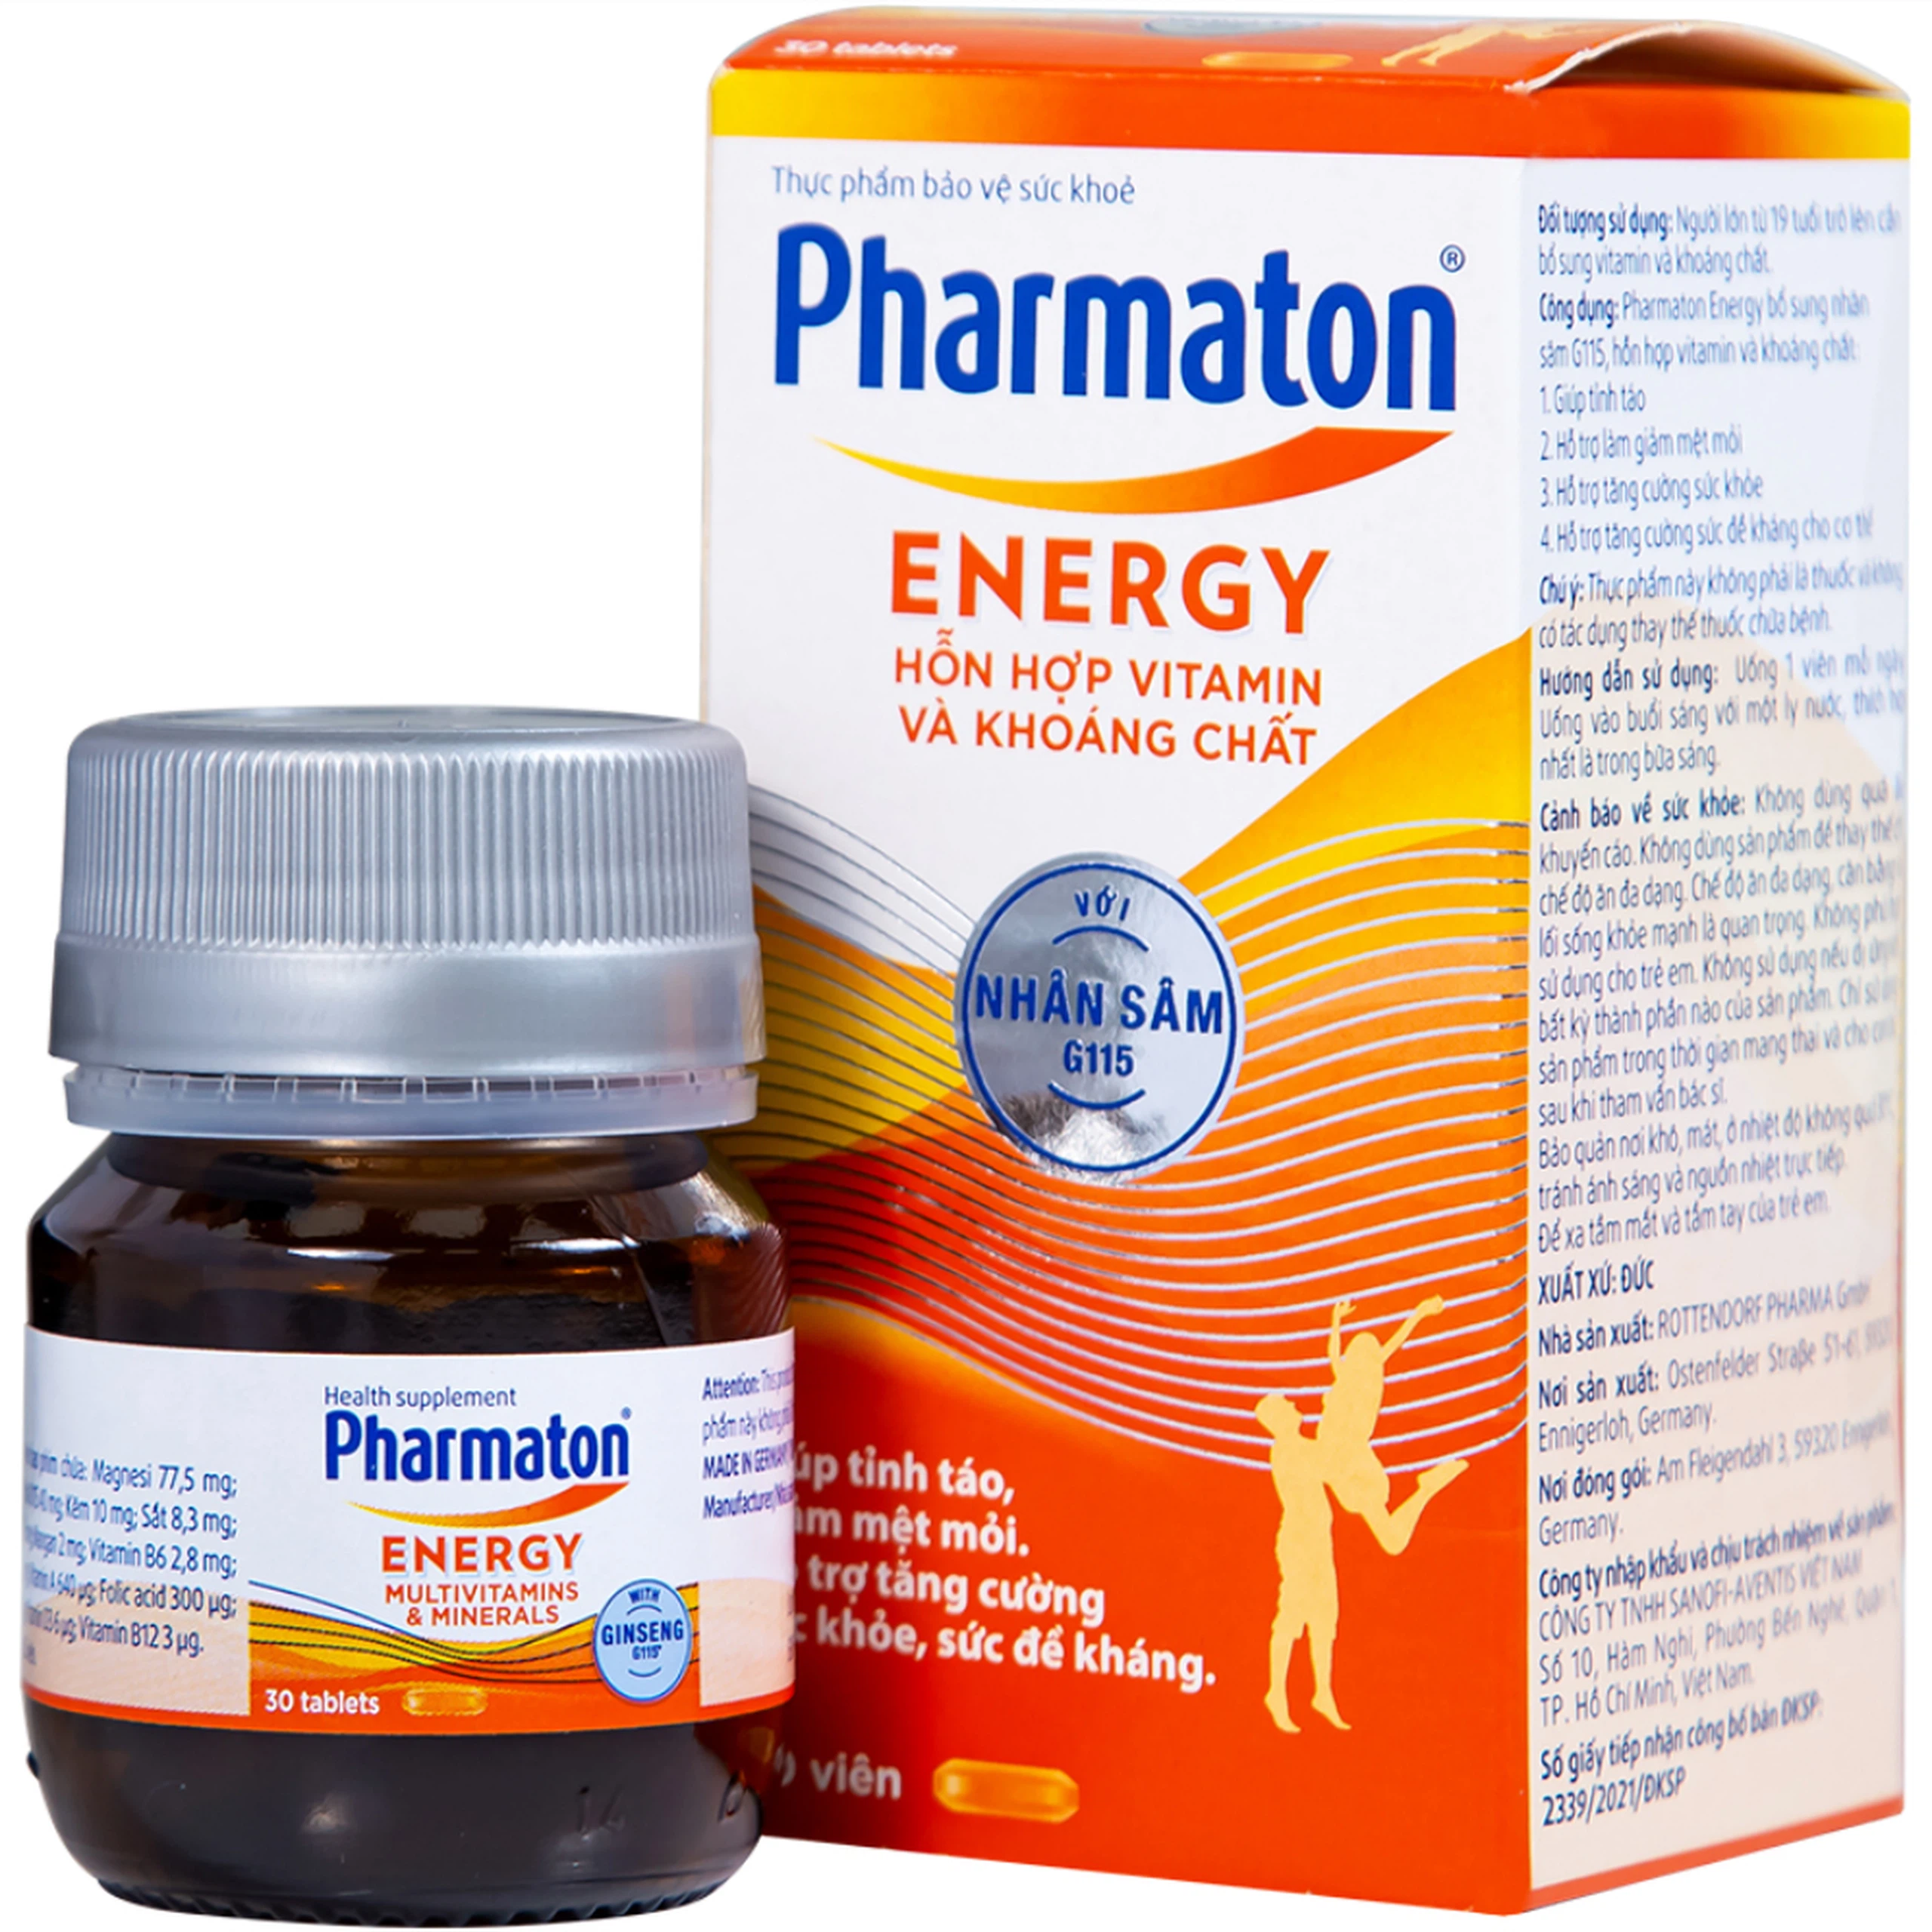 Viên uống Pharmaton Energy hỗn hợp vitamin và khoáng chất giúp tỉnh táo, hỗ trợ giảm mệt mỏi (30 viên)